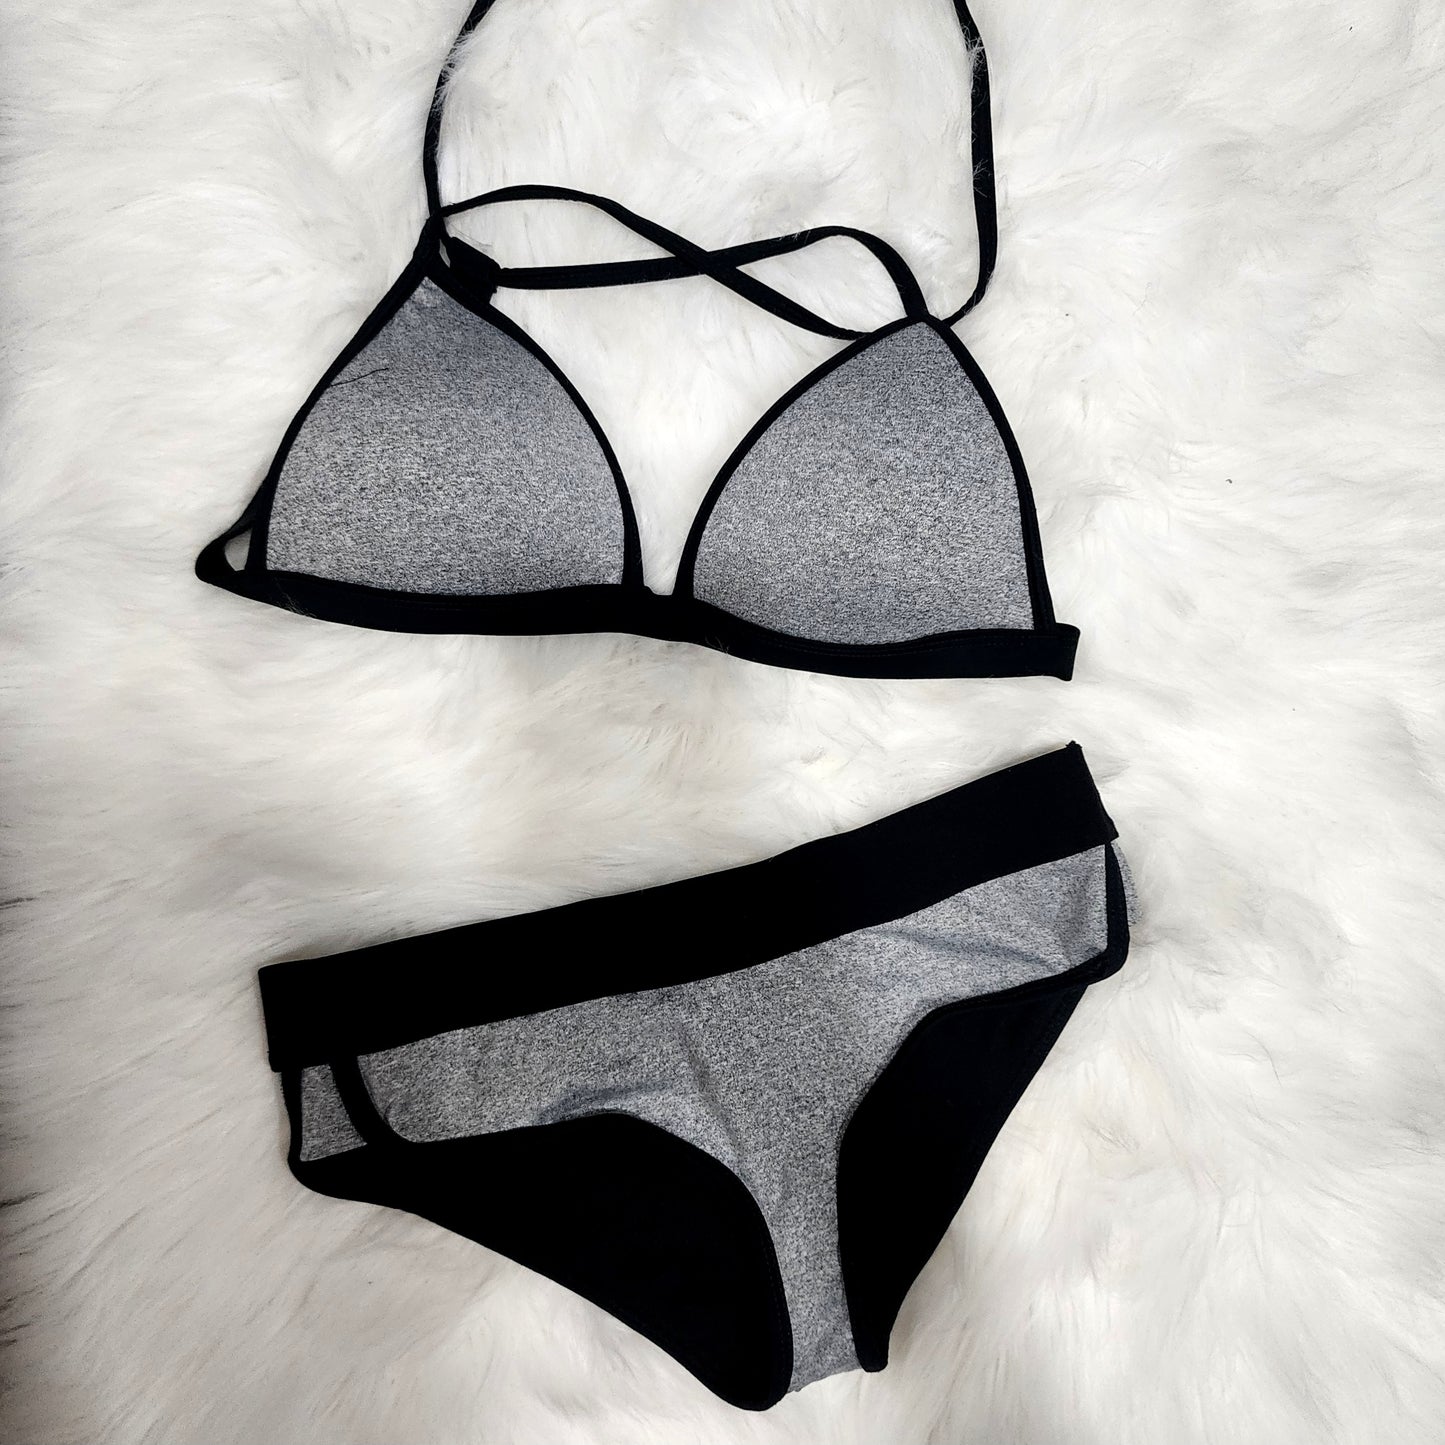 Ara Bikini de dos piezas color gris y negro. El bra tiene almohadillas para mejor soporte     Gris y negro